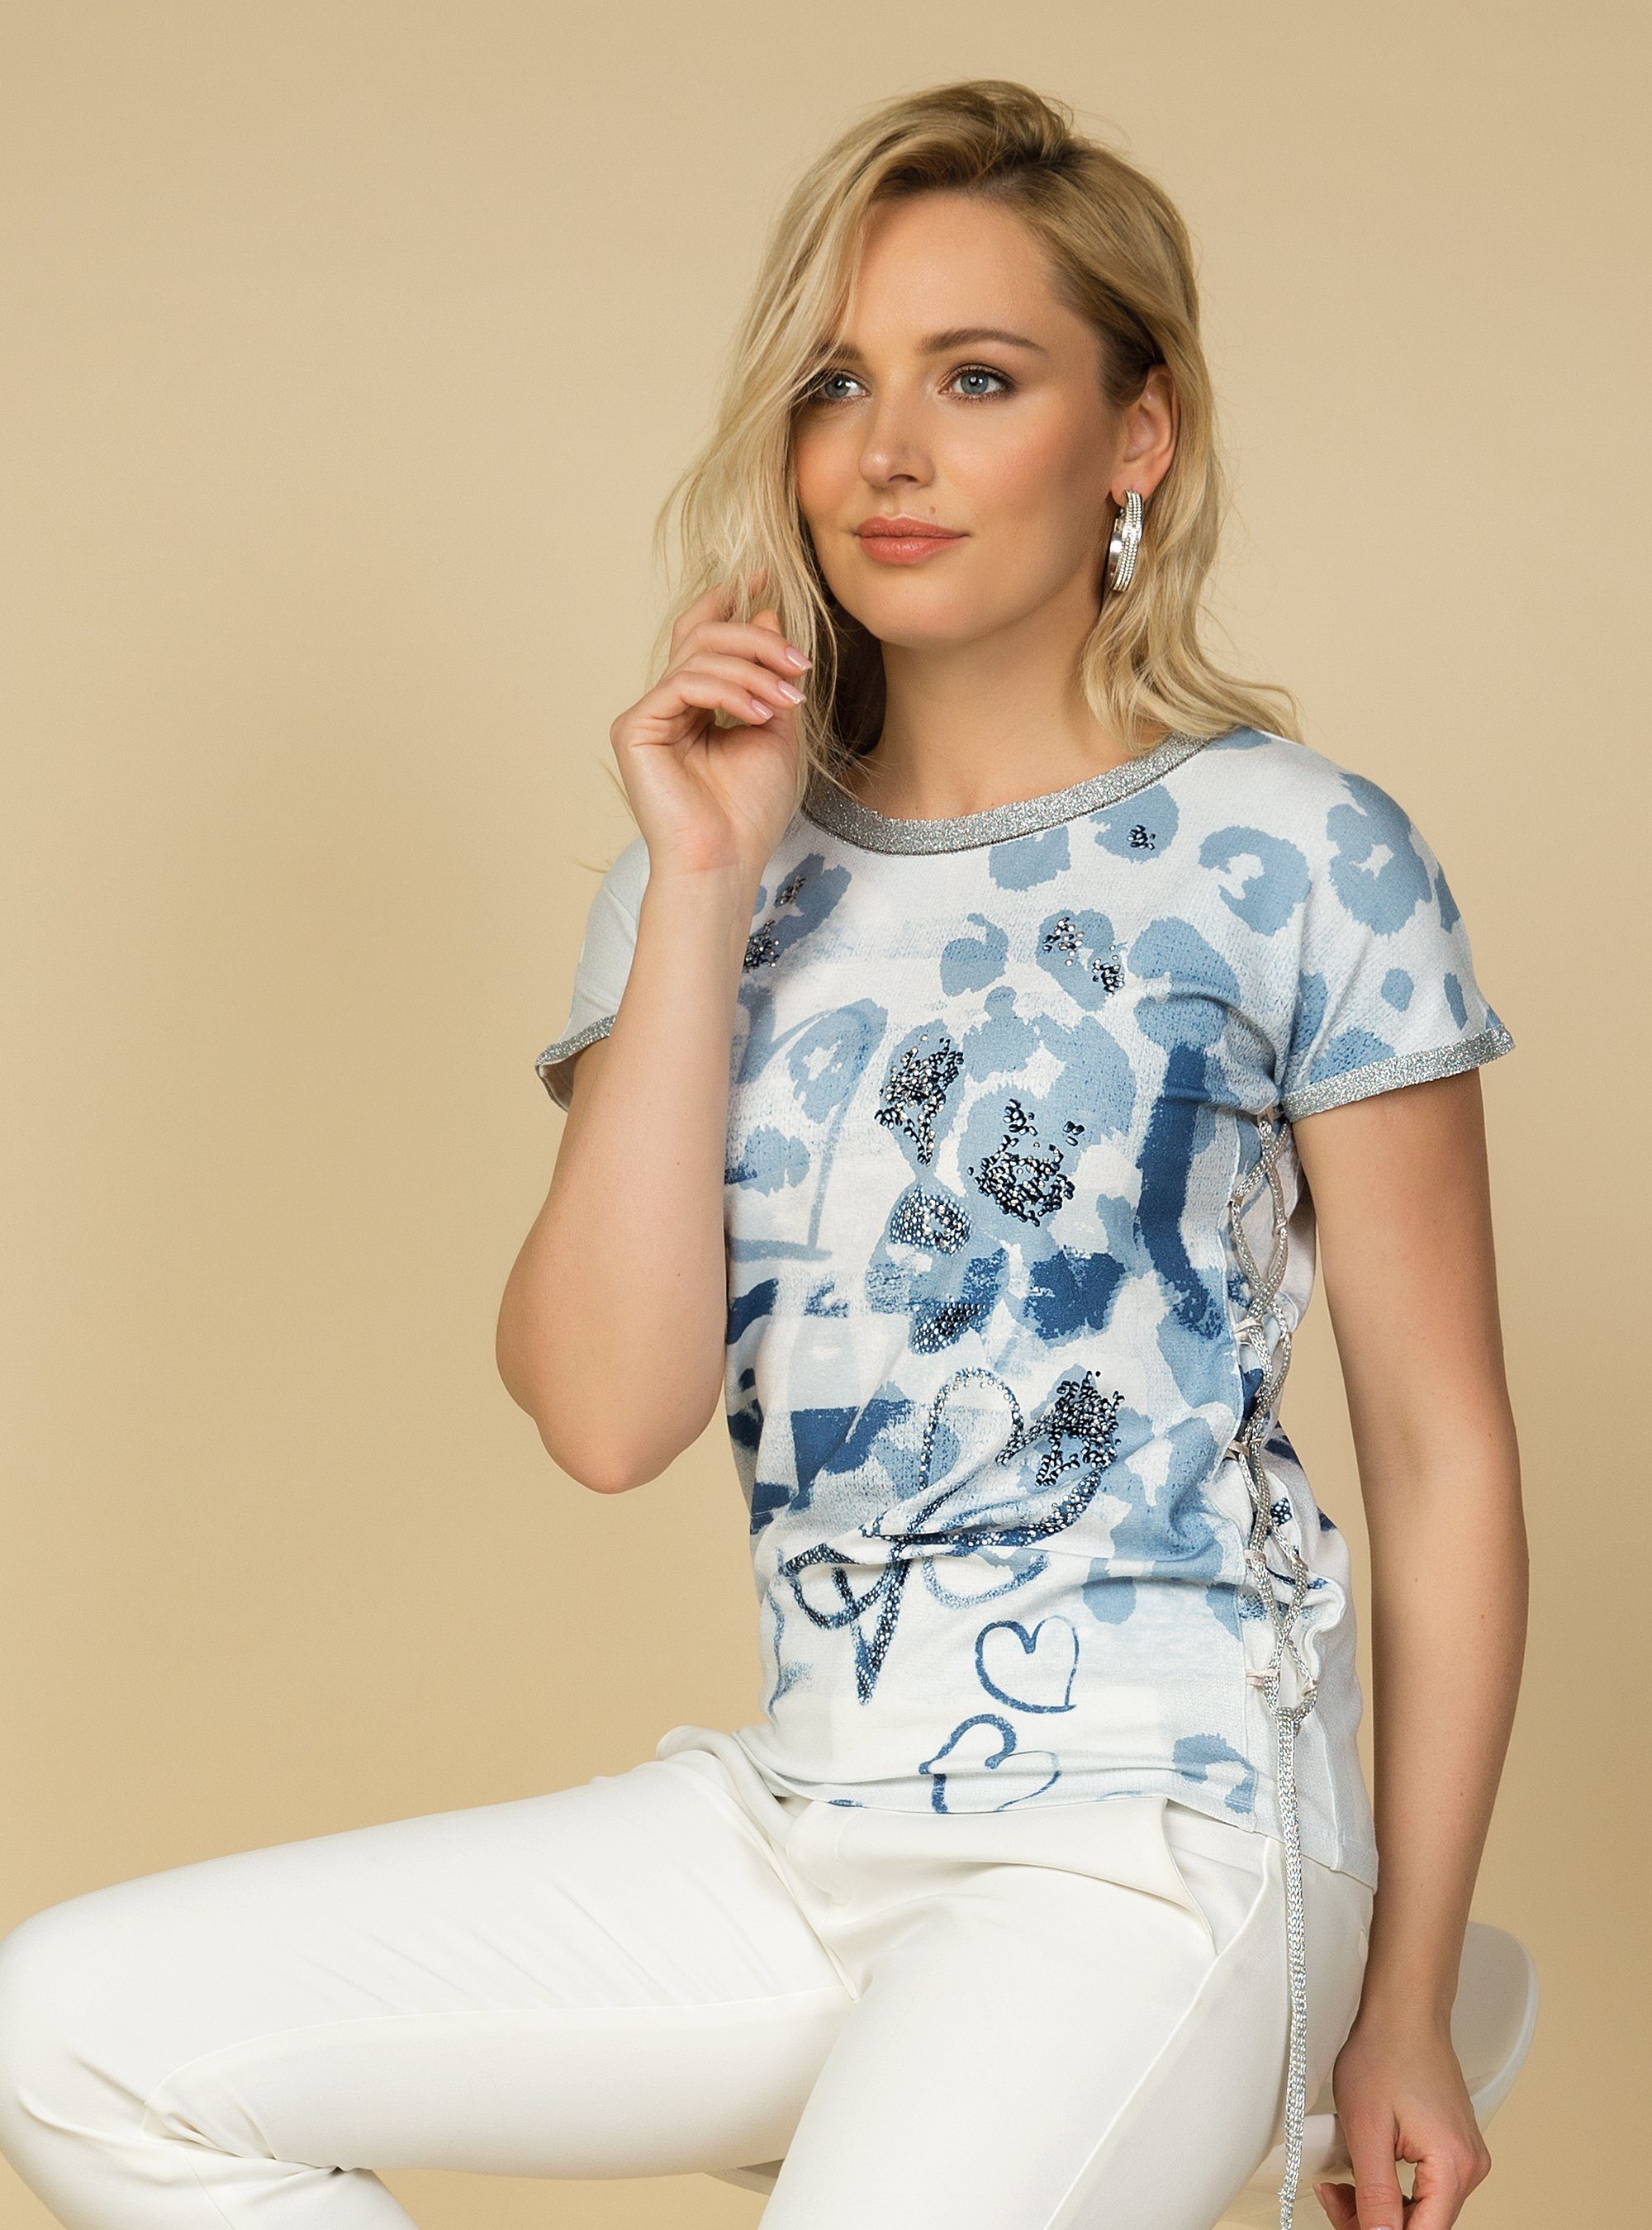 Passioni Print-Shirt Bedrucktes T-Shirt mit Lurexkante und Steindekoration T -Shirt mit Print